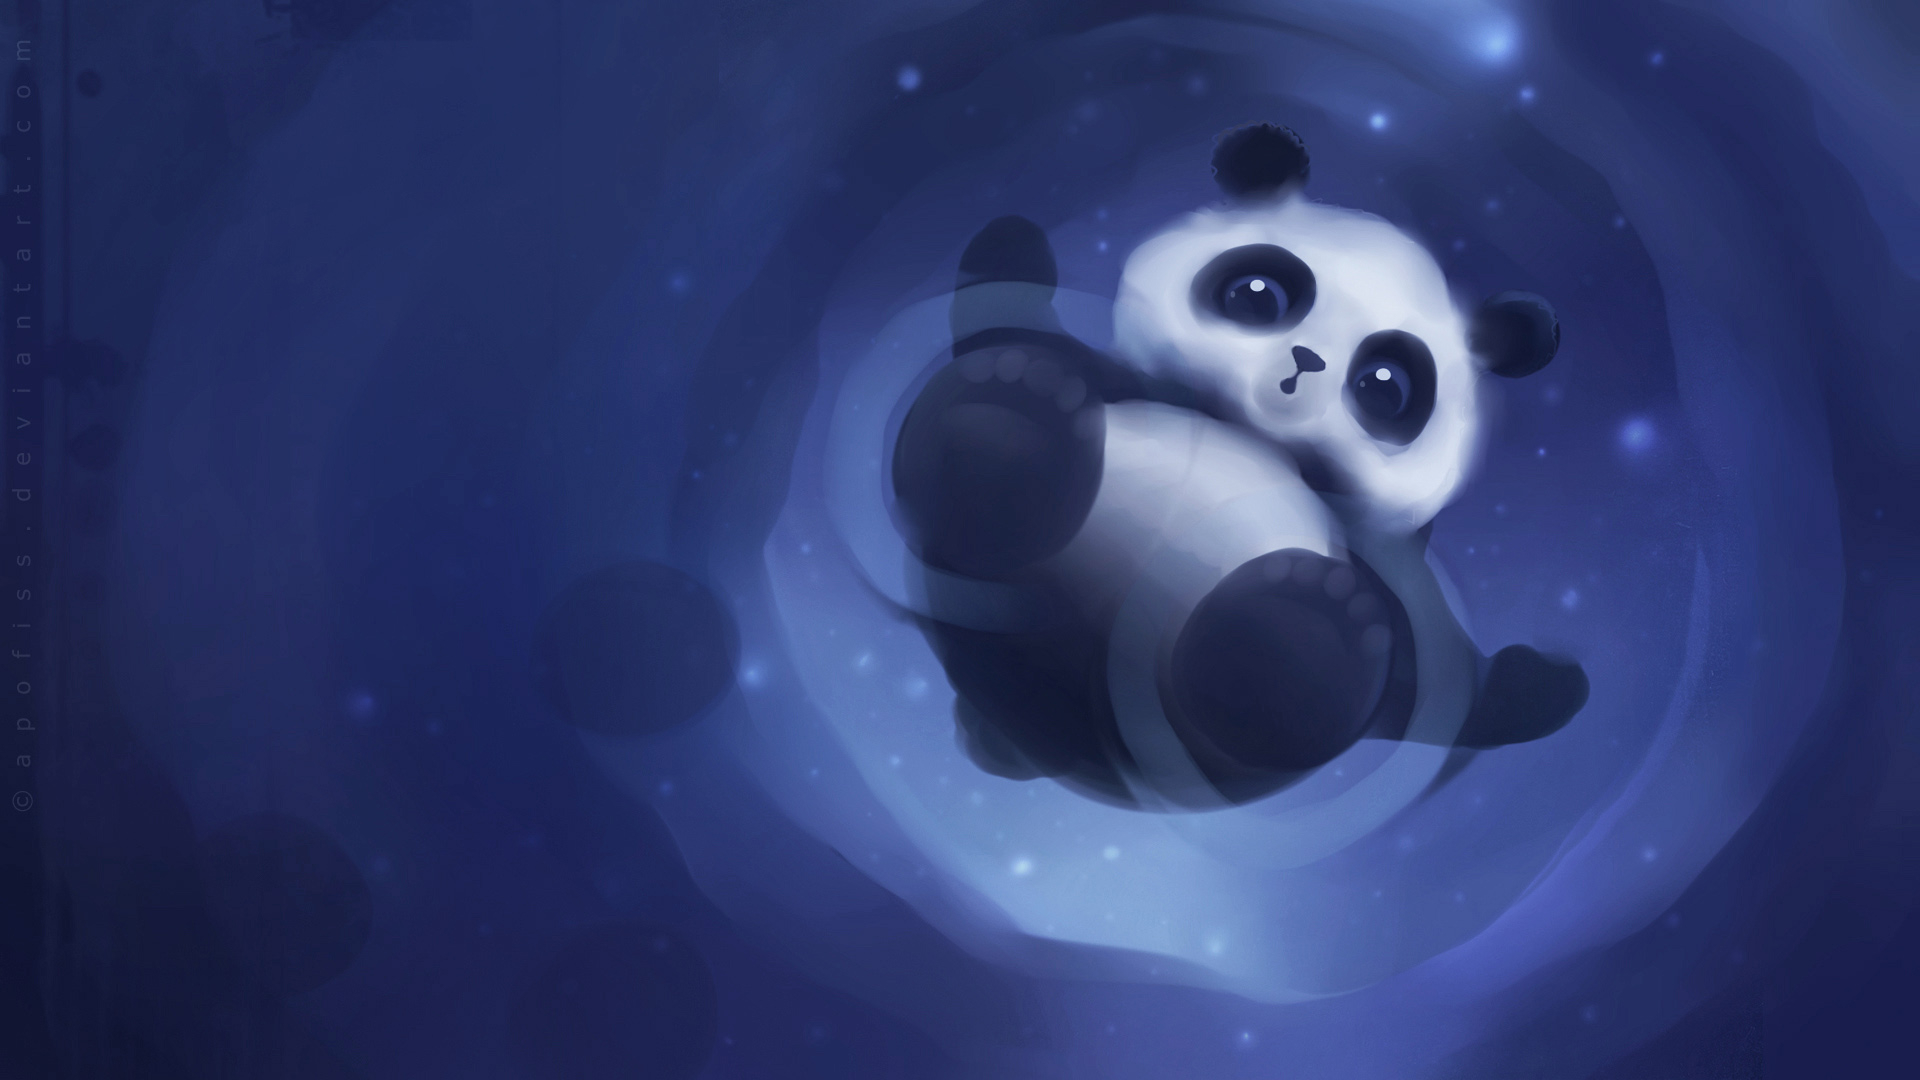 Panda Paper by Apofiss